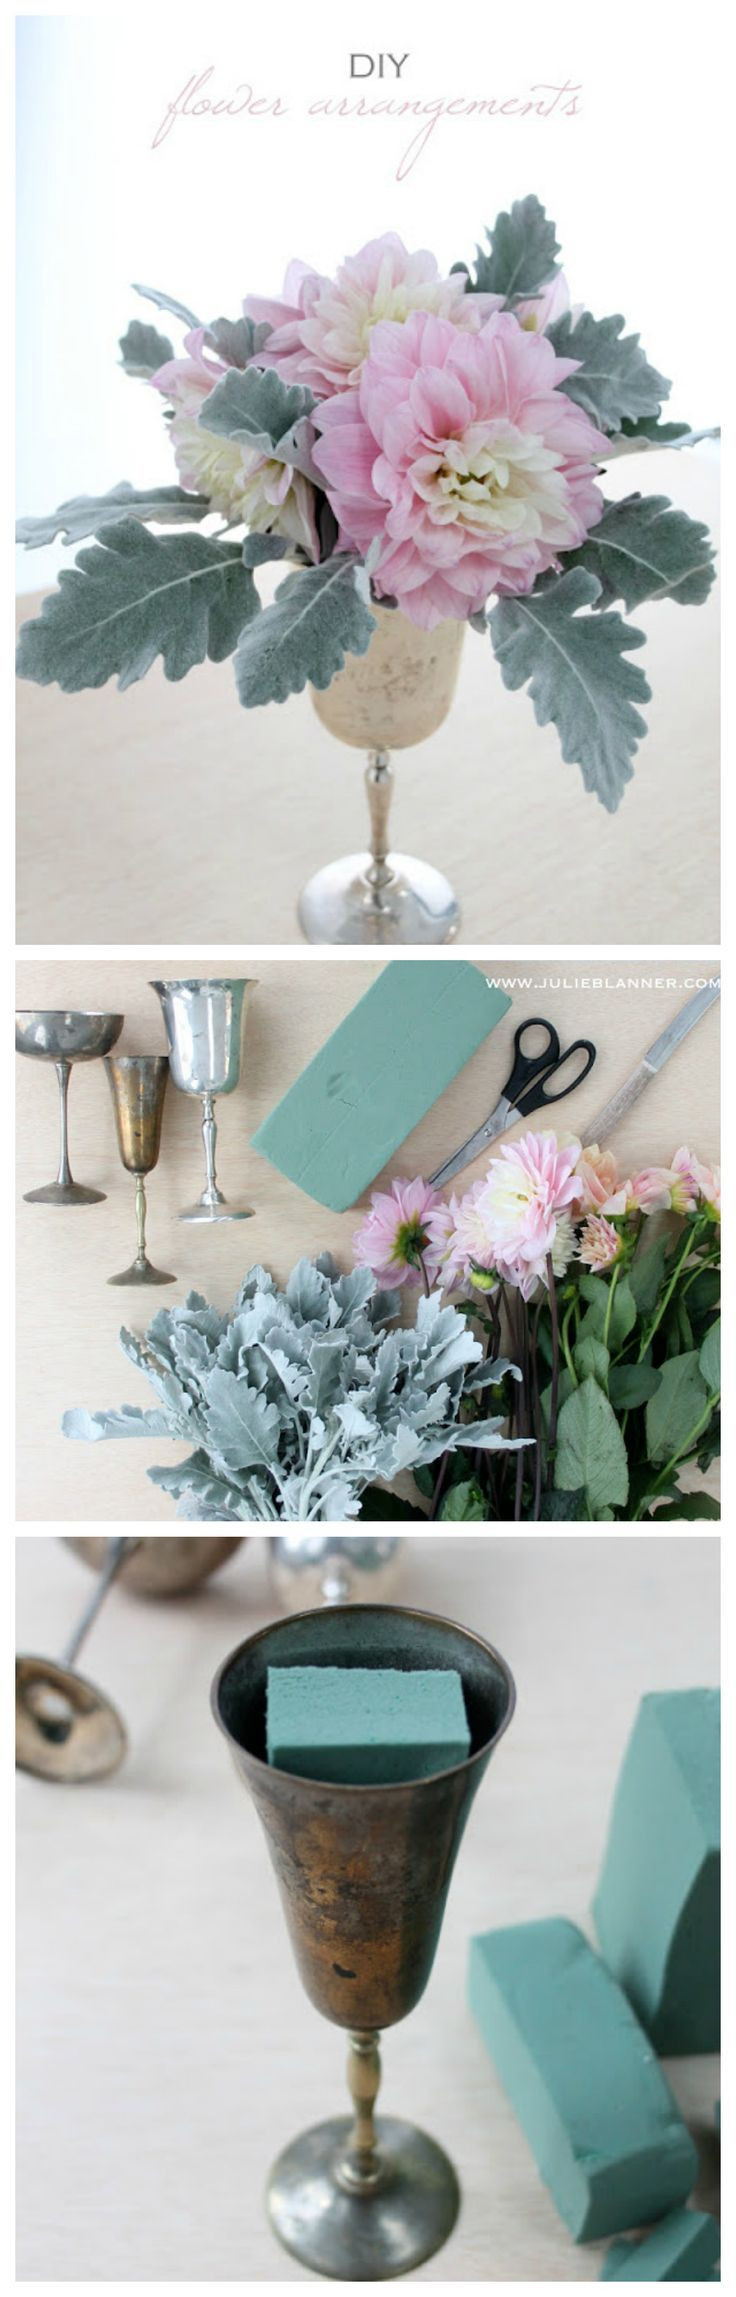 Best ideas about DIY Floral Arrangements
. Save or Pin 25 best ideas about Easy flower arrangements on Pinterest Now.